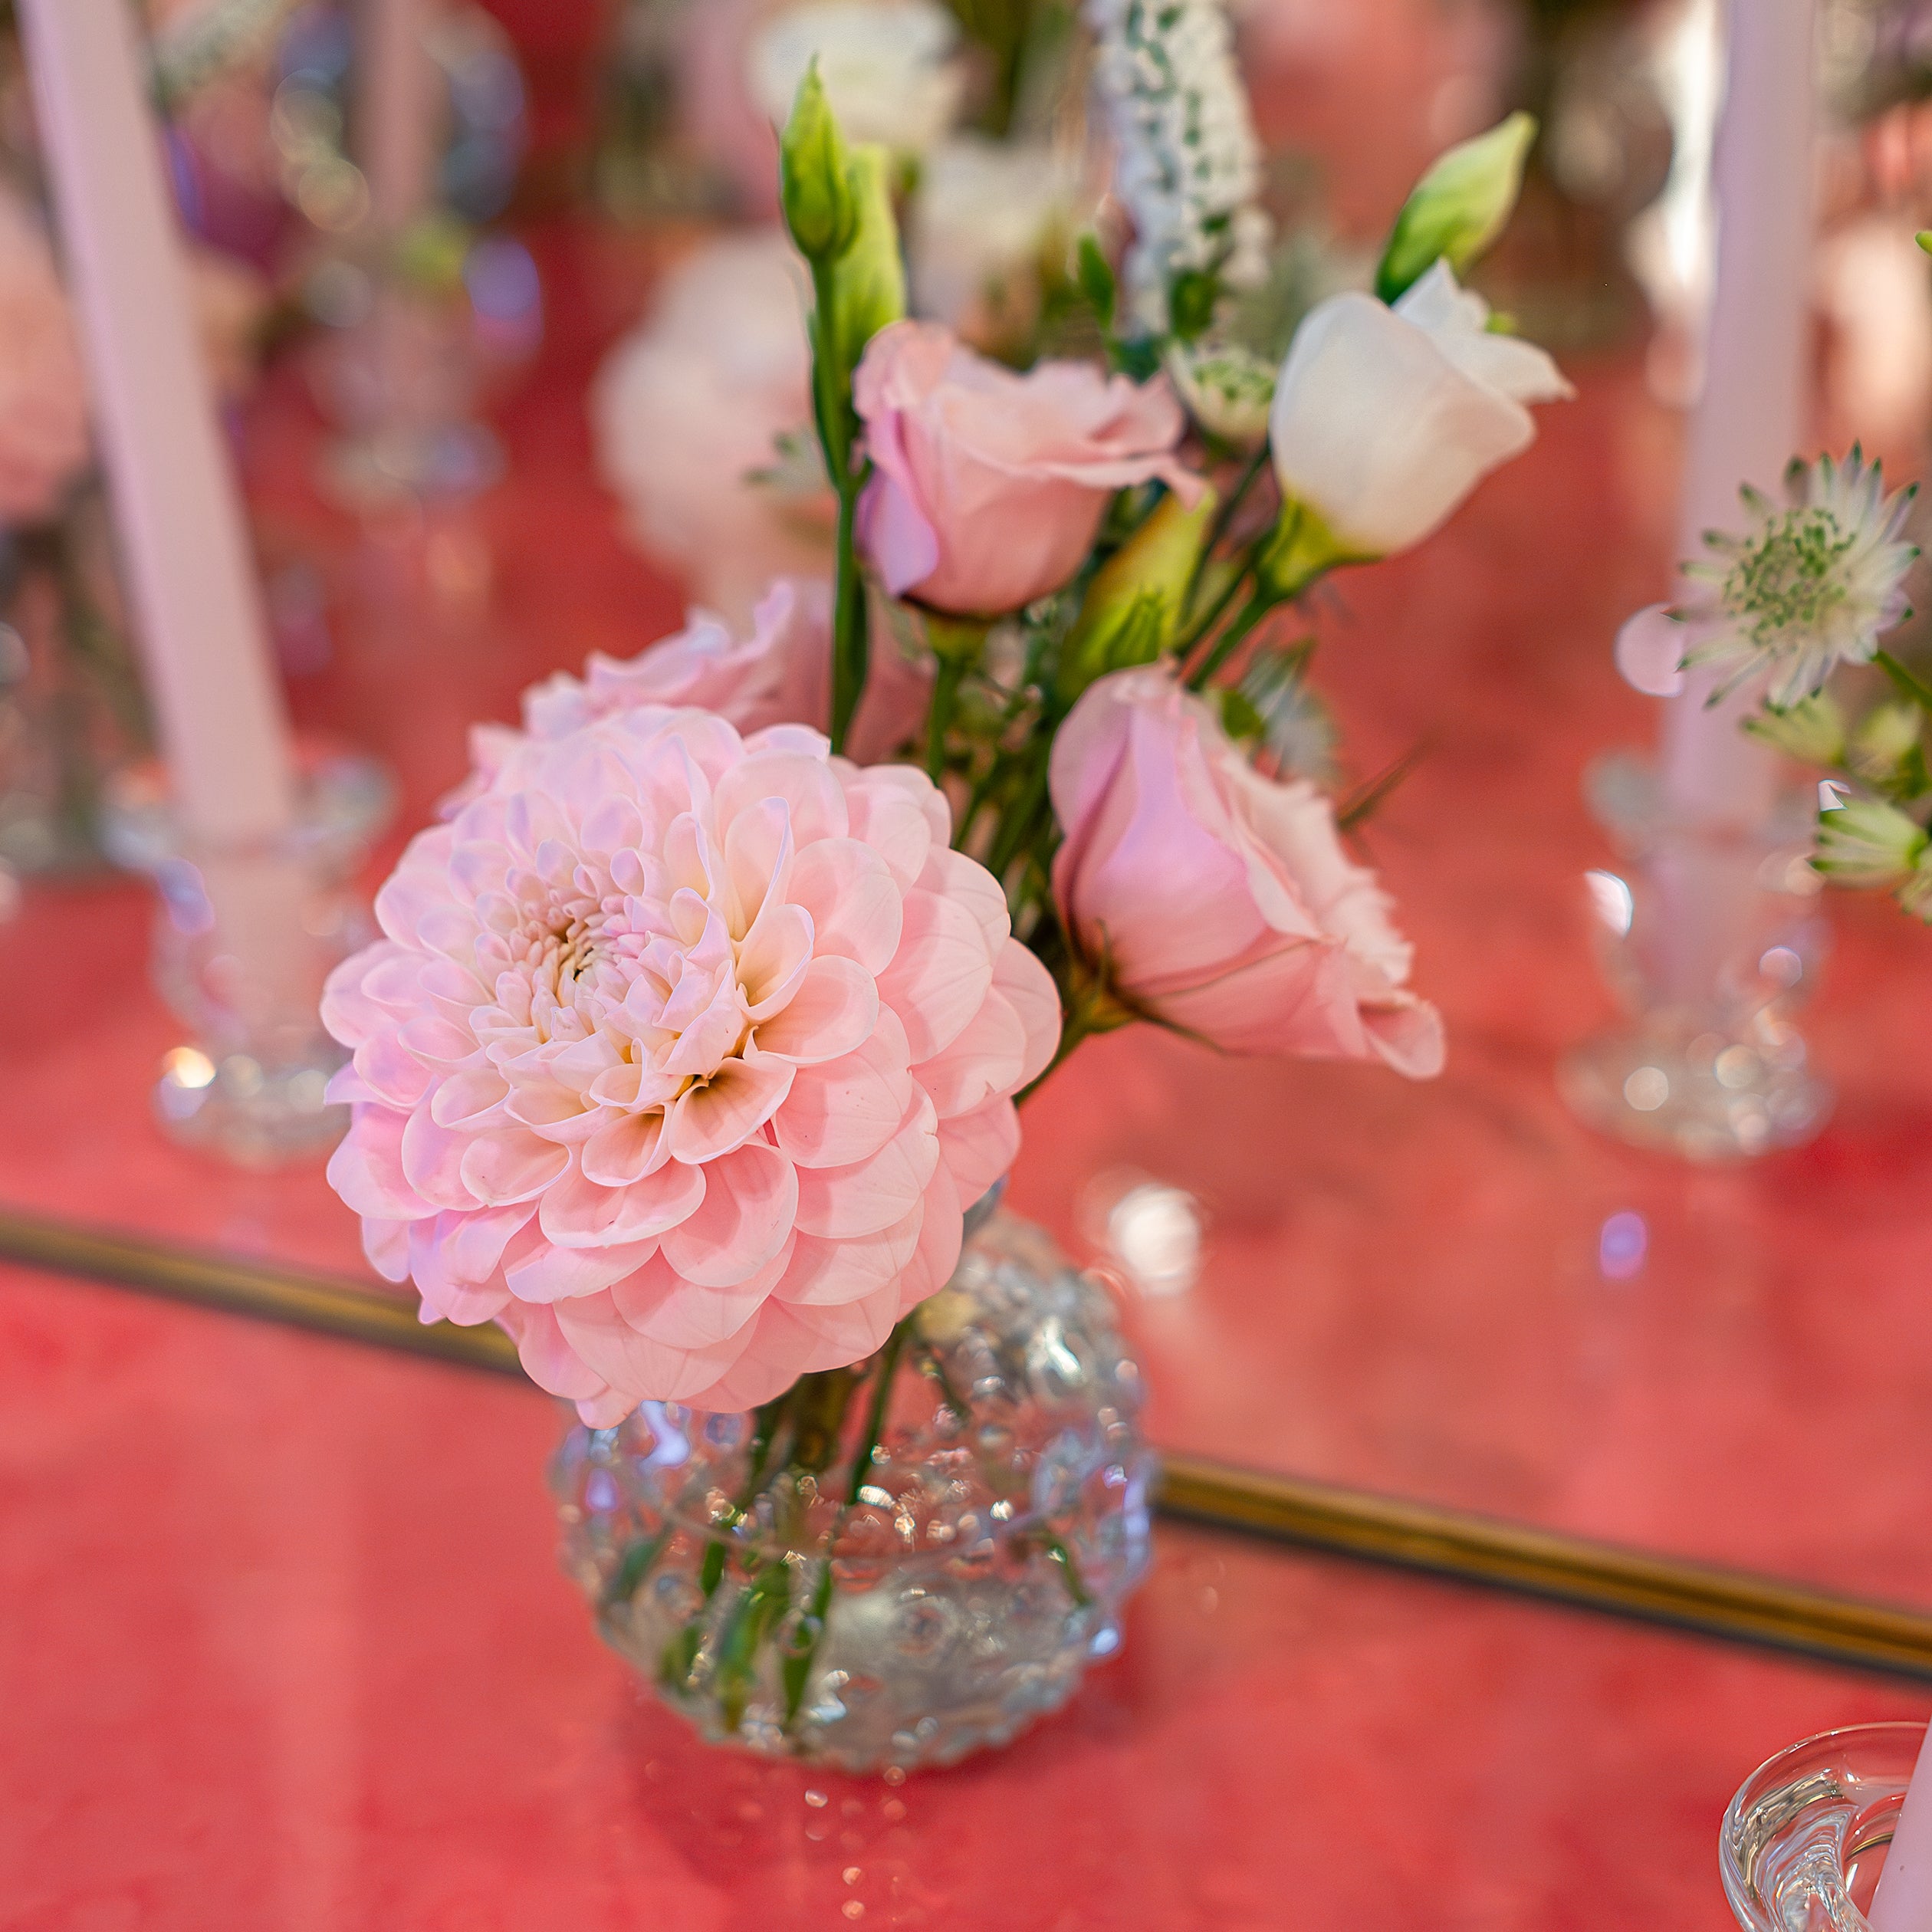 A delicate pink dahlia arrangement in a clear glass vase enhances the elegant table setting for the Sensai product launch - Amaranté London